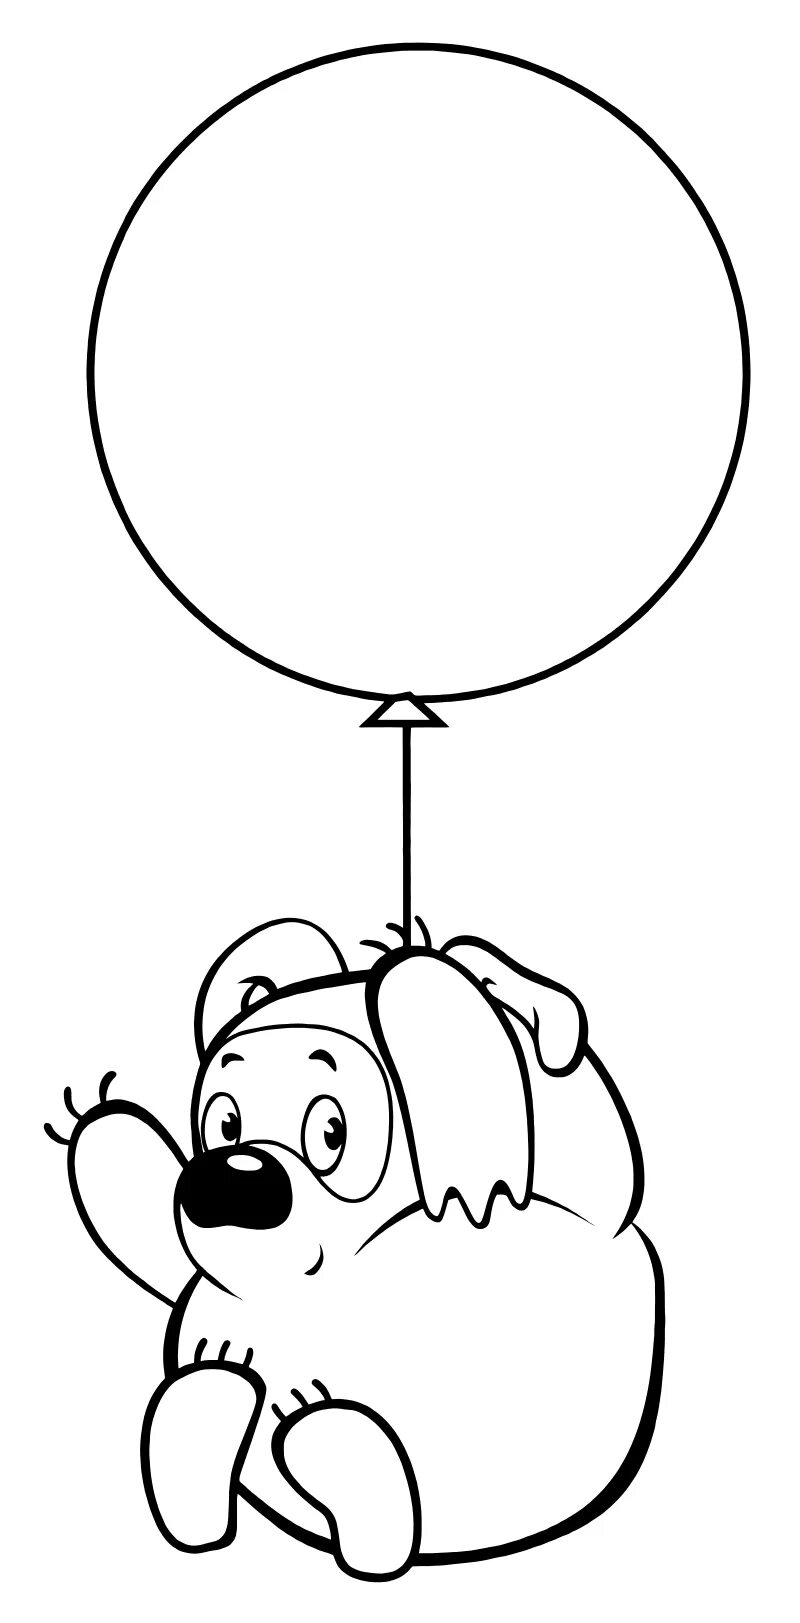 Винни пух на шаре. Раскраска Винни пух на воздушном шаре. Винни пух на воздушном шаре. Воздушный шарик раскраска. Шар раскраска.